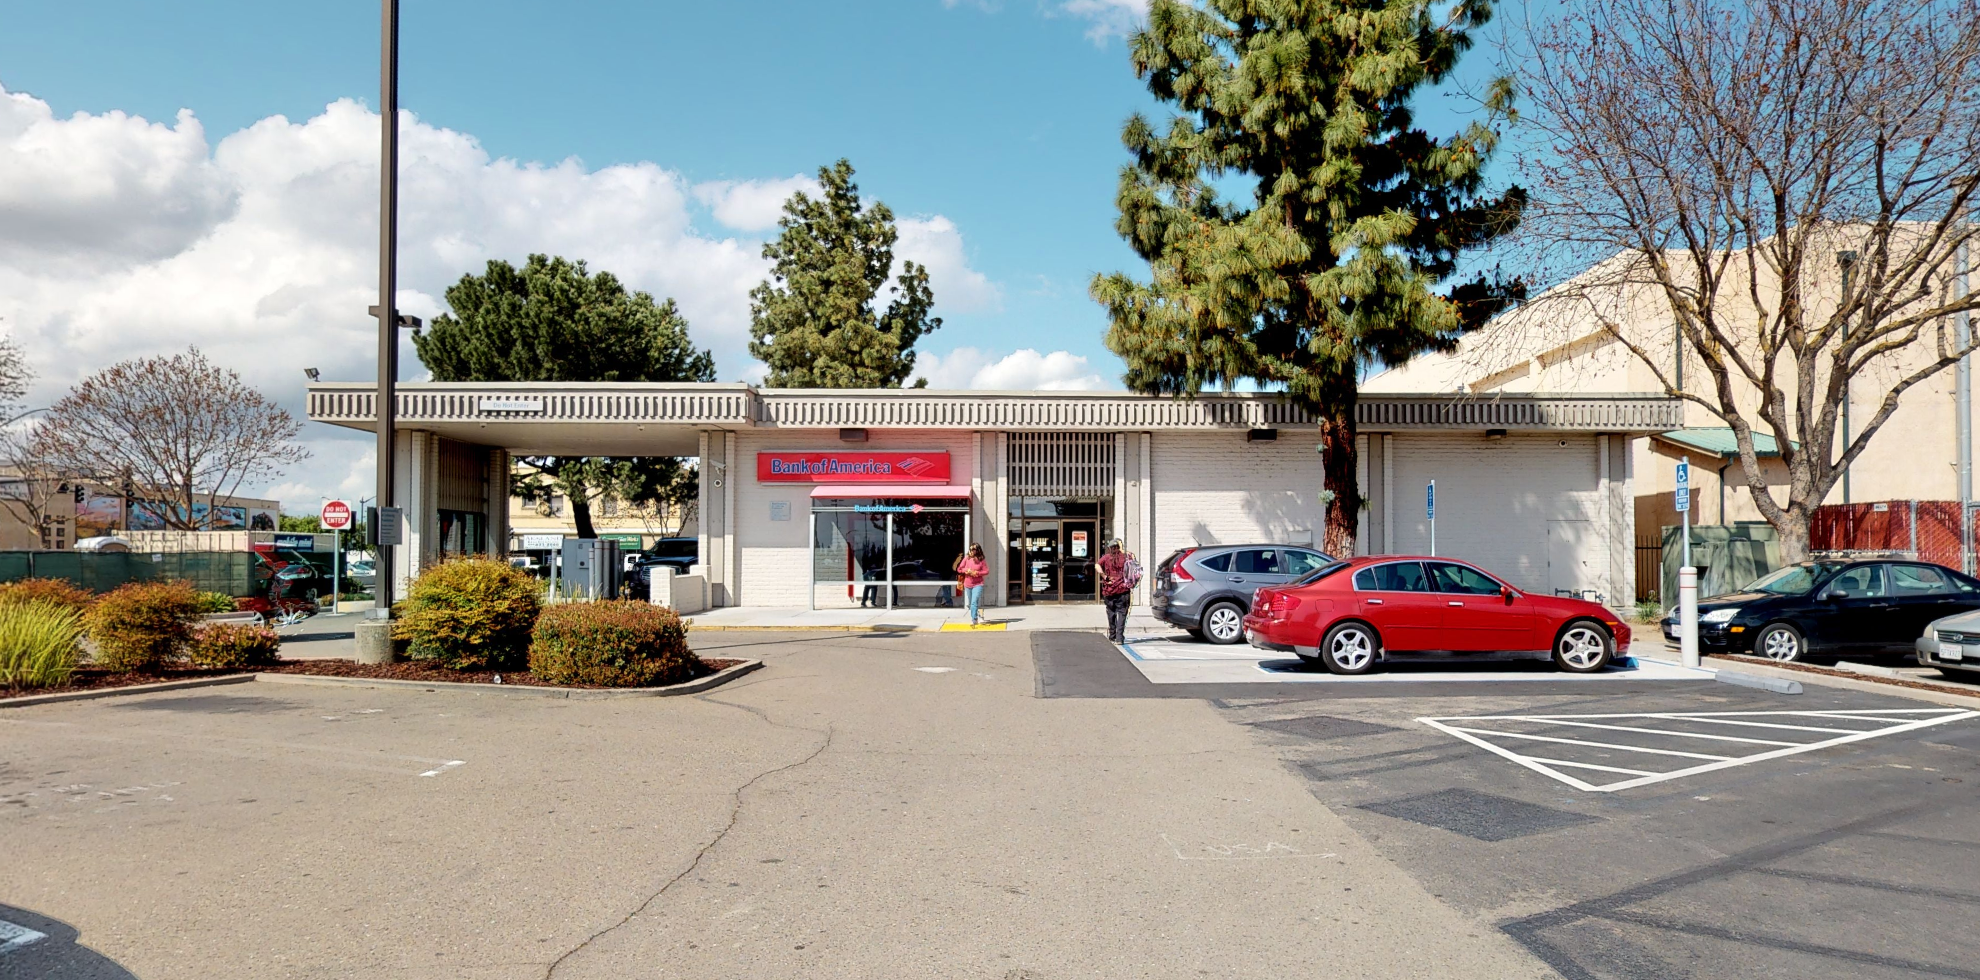 Bank of America financial center with drive-thru ATM | 102 E Yosemite Ave, Manteca, CA 95336